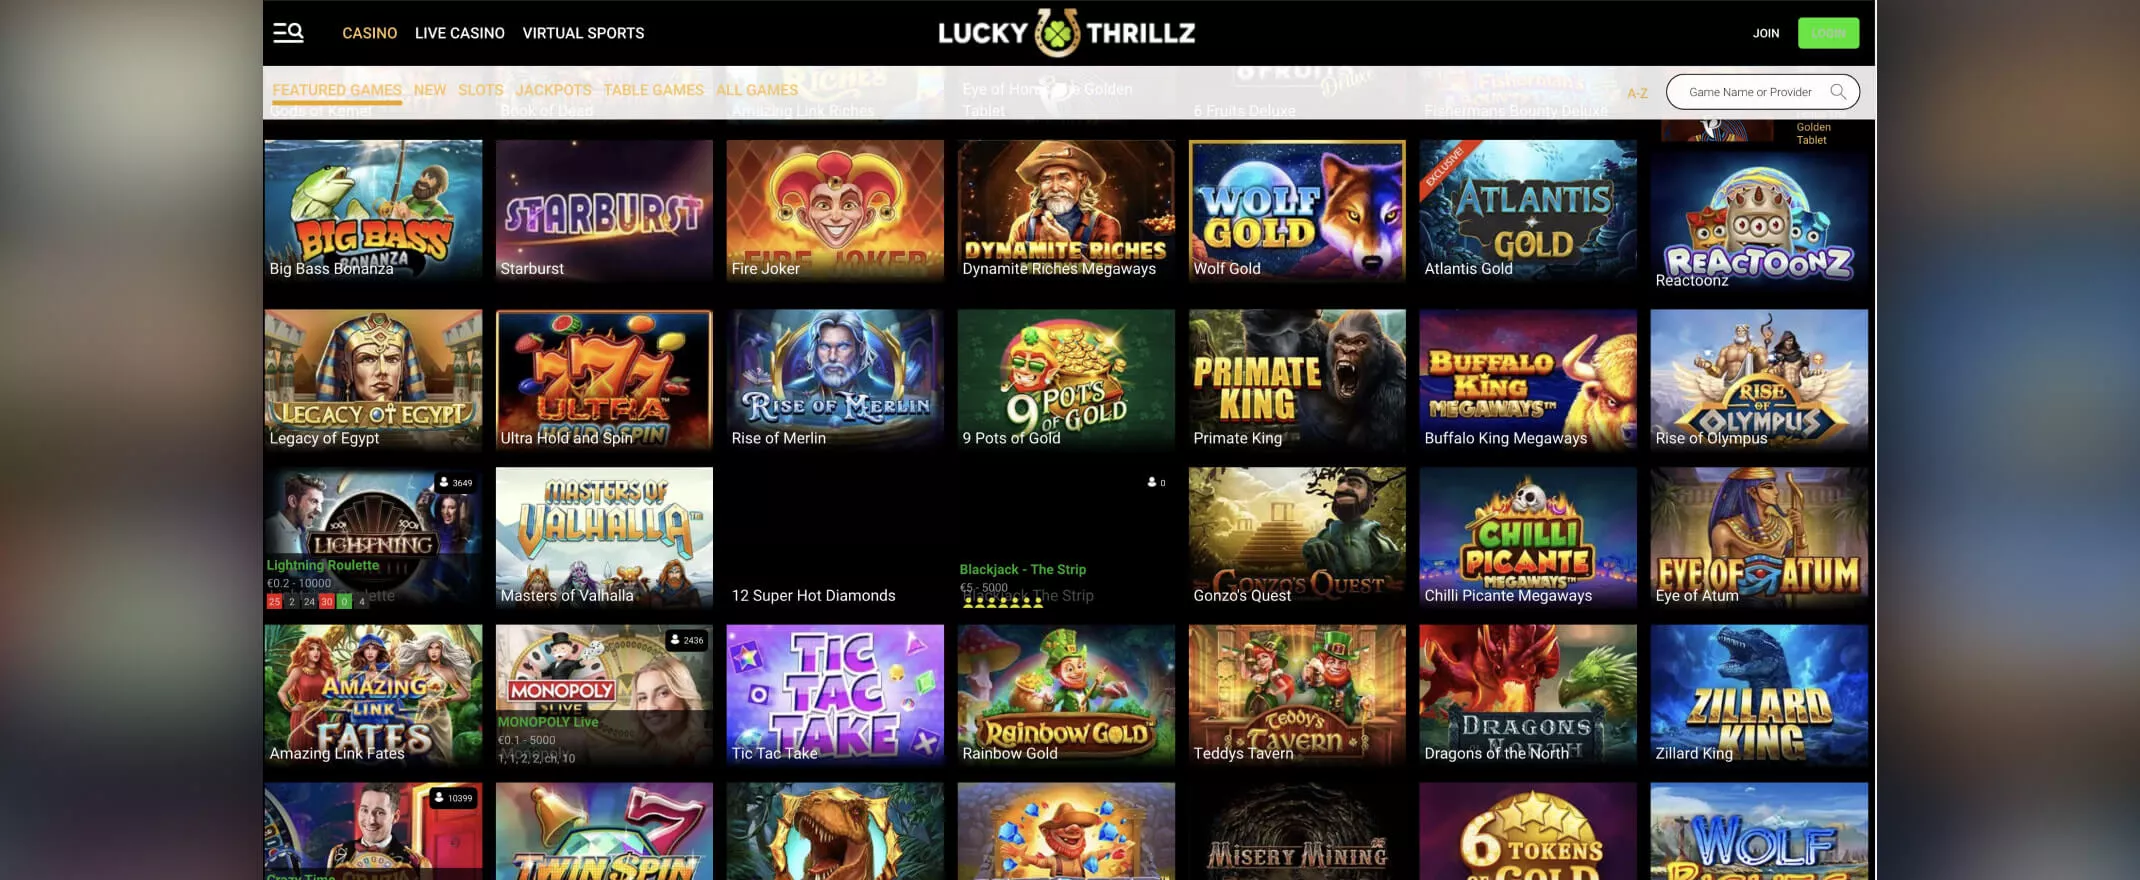 Lucky Thrillz Casino screenshot of games